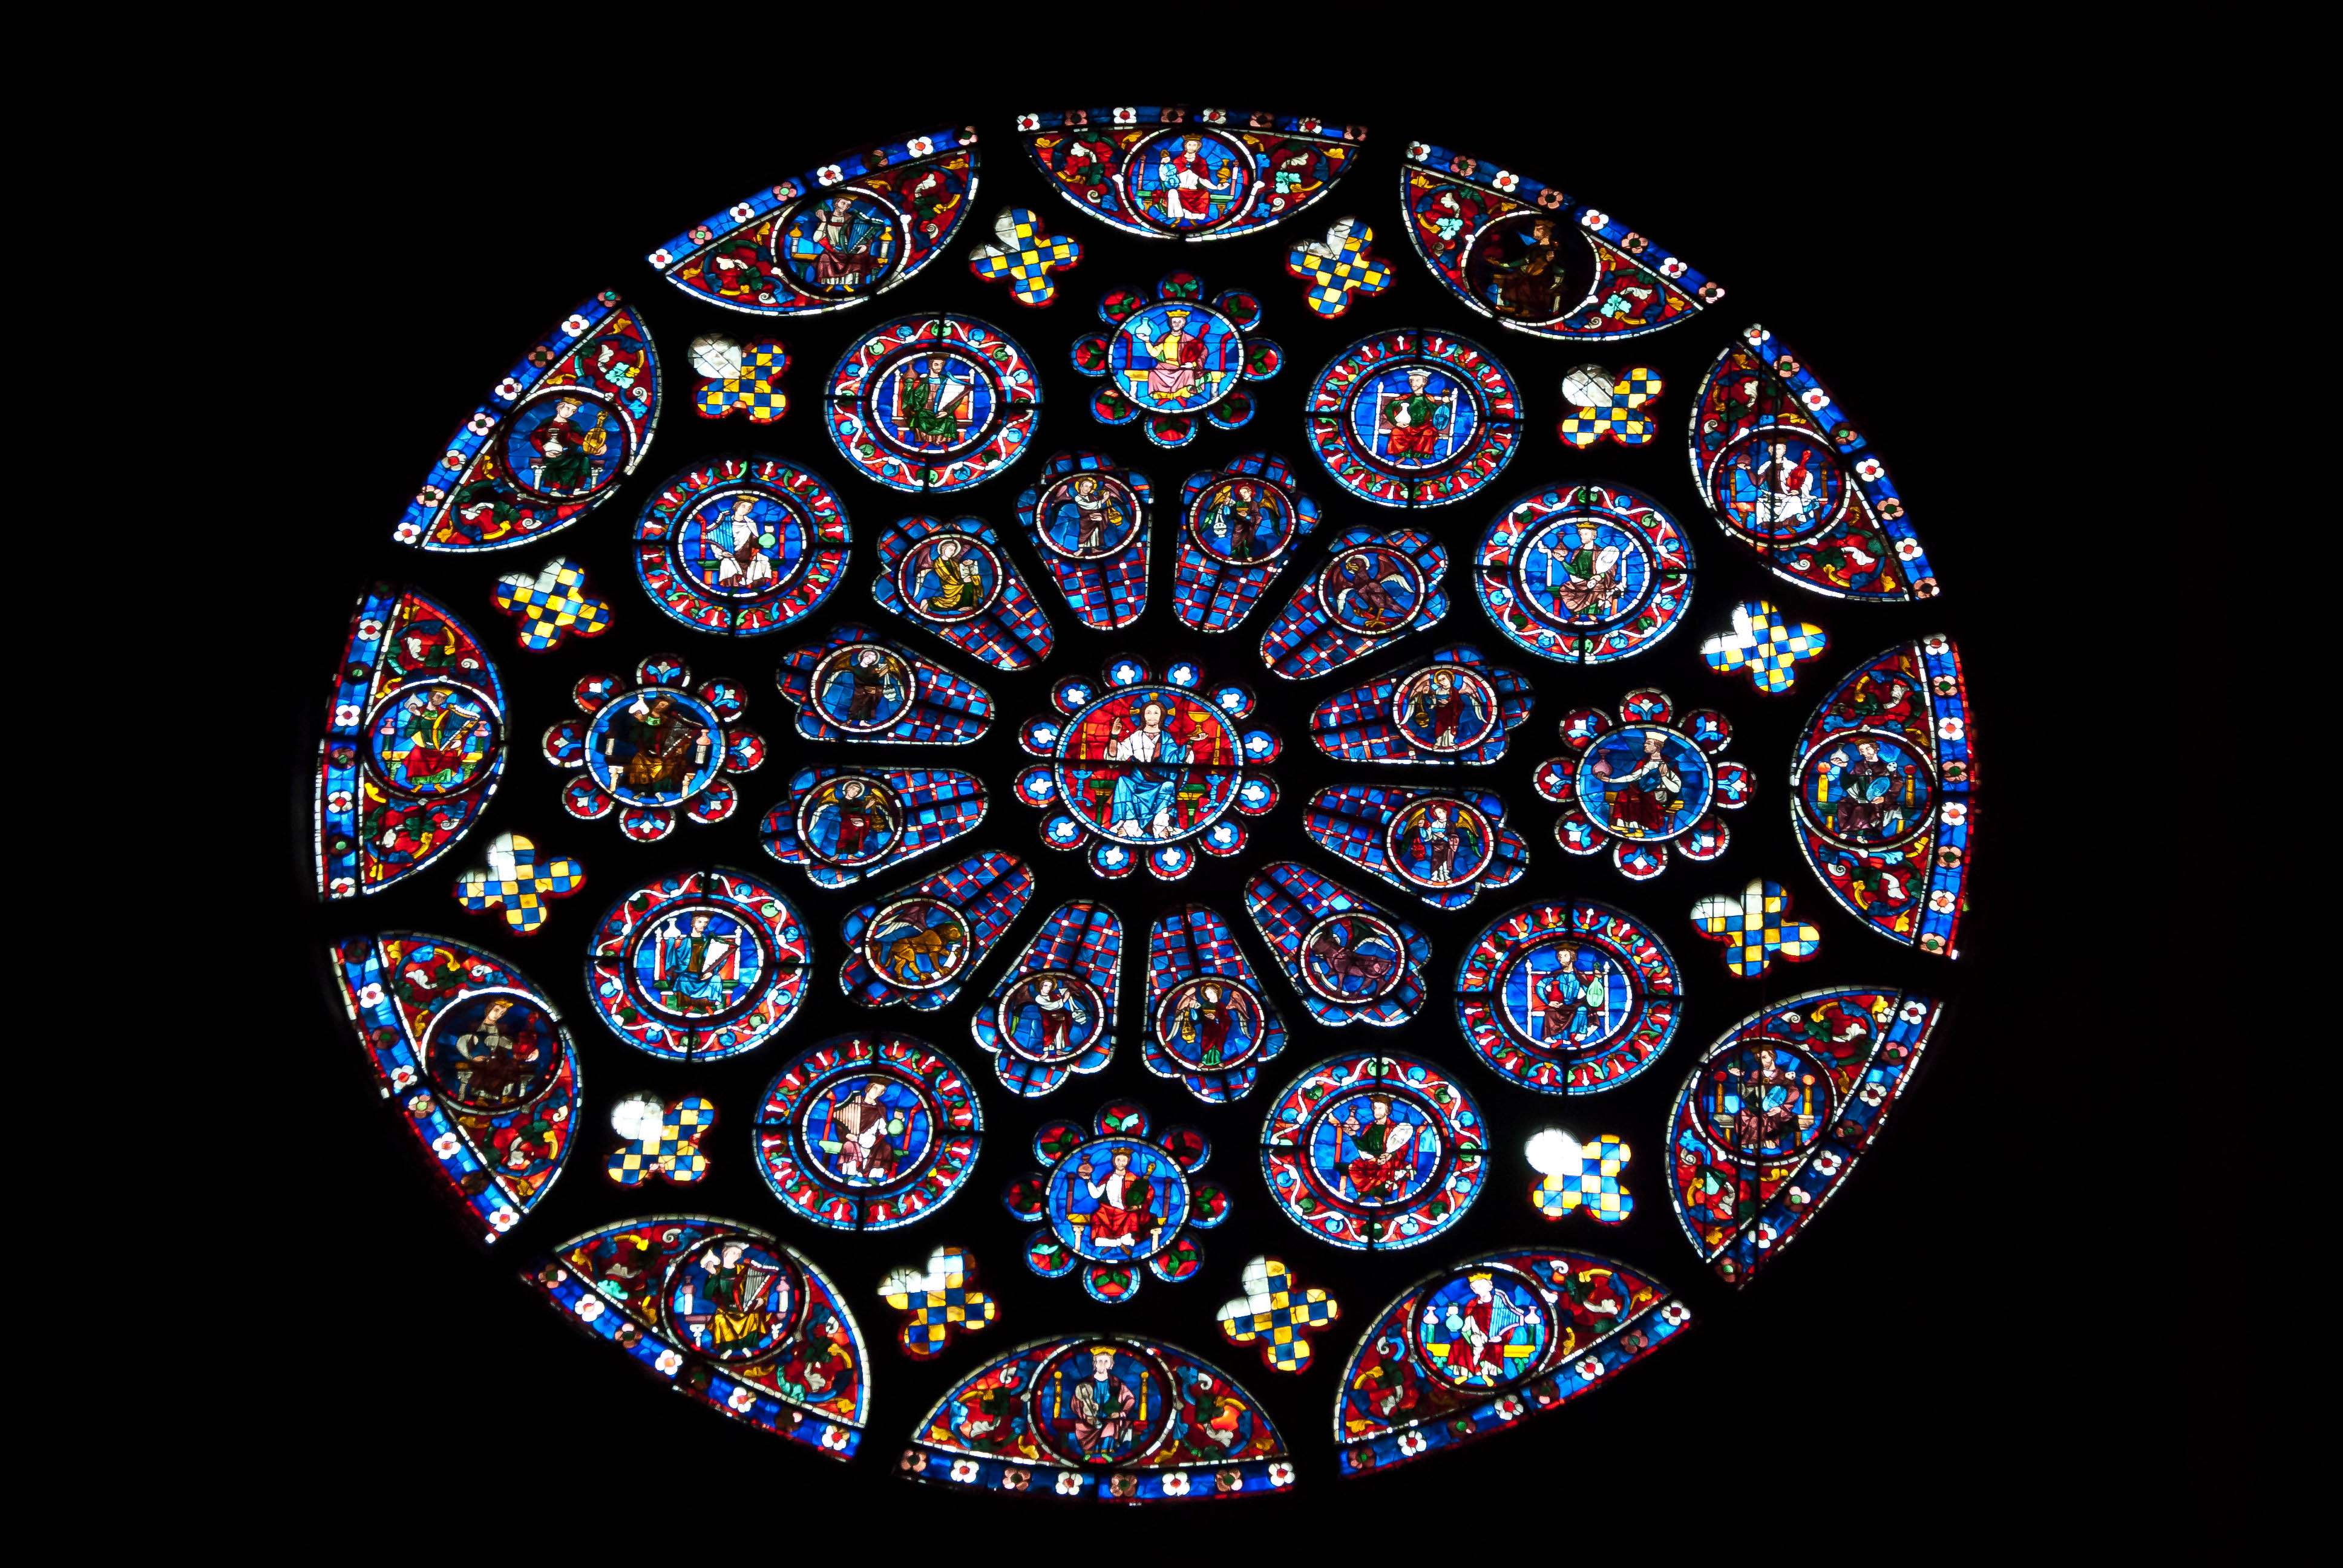 Las vidrieras de la catedral de Chartres - Chartres: Arte, espiritualidad y esoterismo. (4)